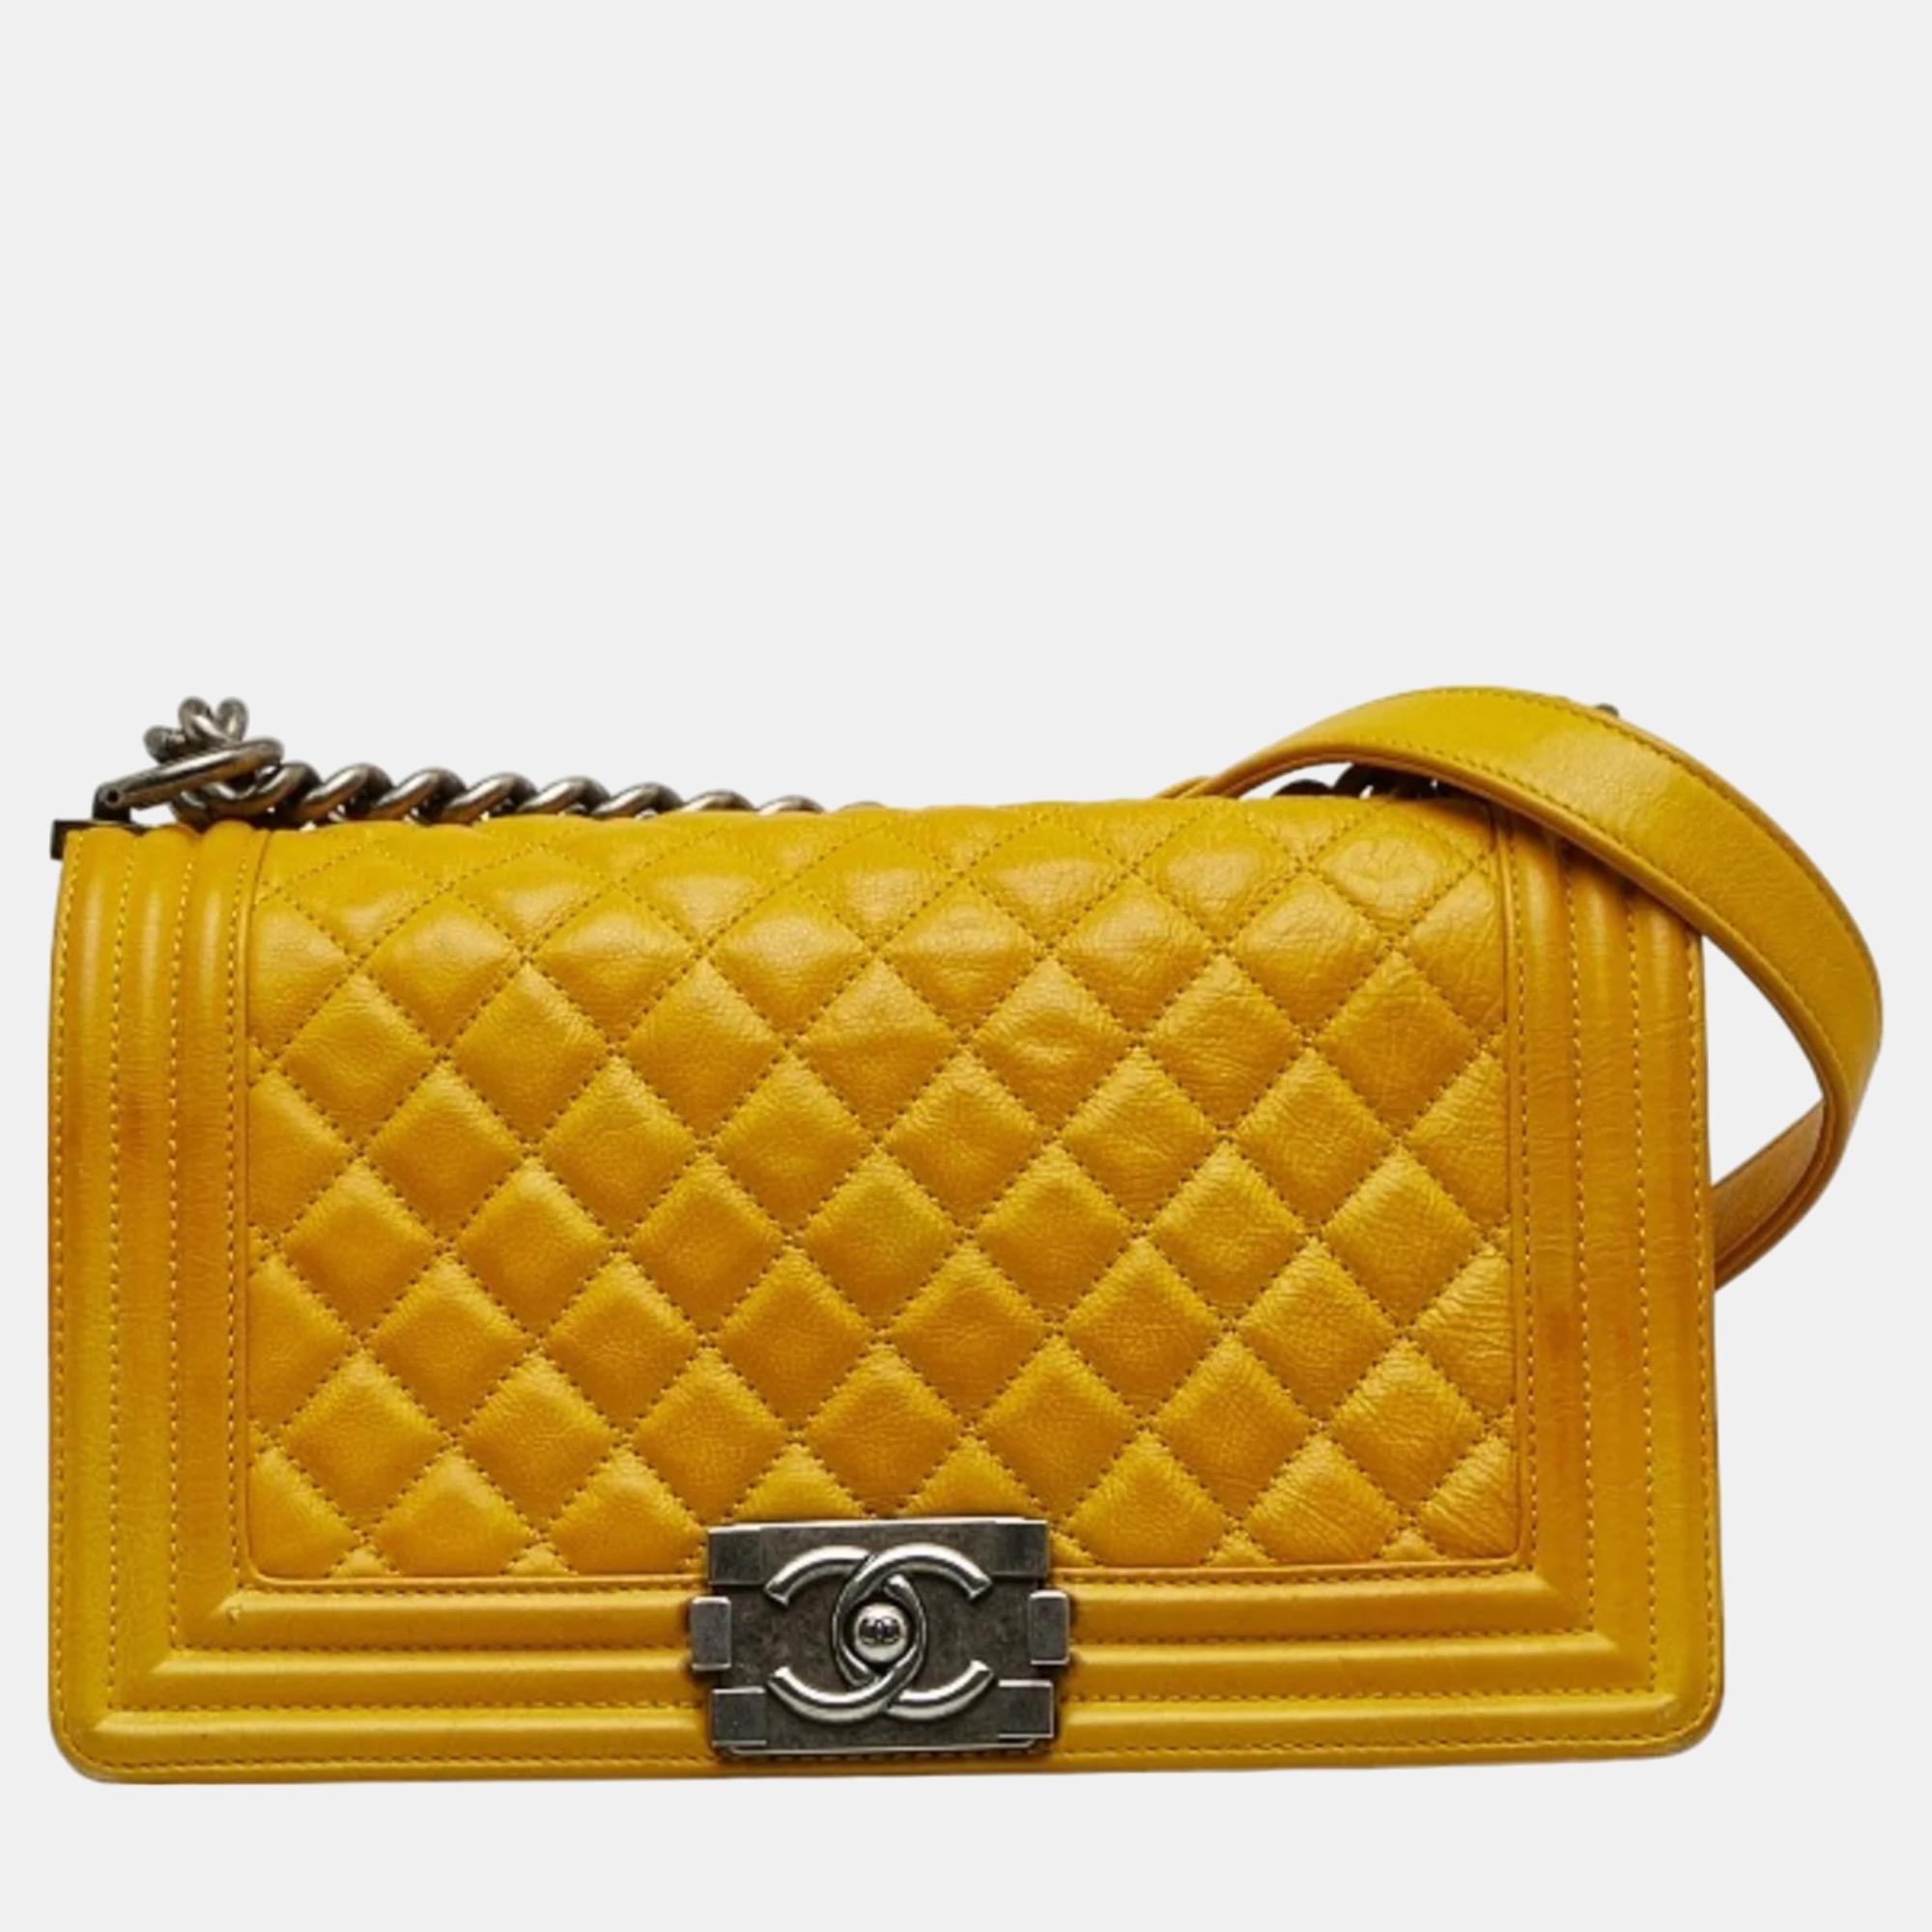 Chanel yellow caviar leather medium boy shoulder bag